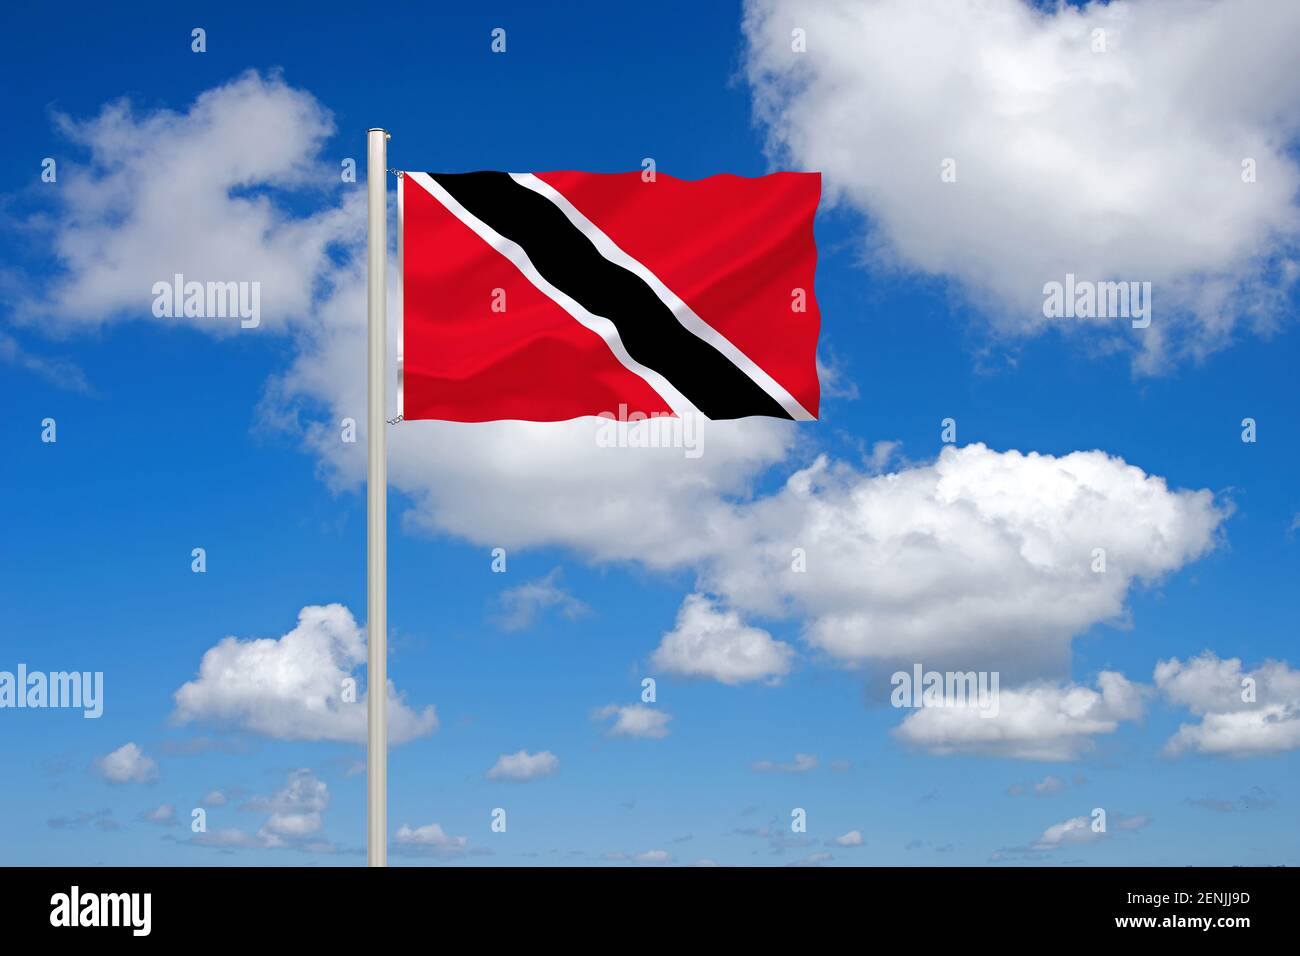 Die Flagge von Trinidad und Tobago, Inseln, Karibik, Inselstaat, Land in der Kribik, 2 Inseln, Stock Photo